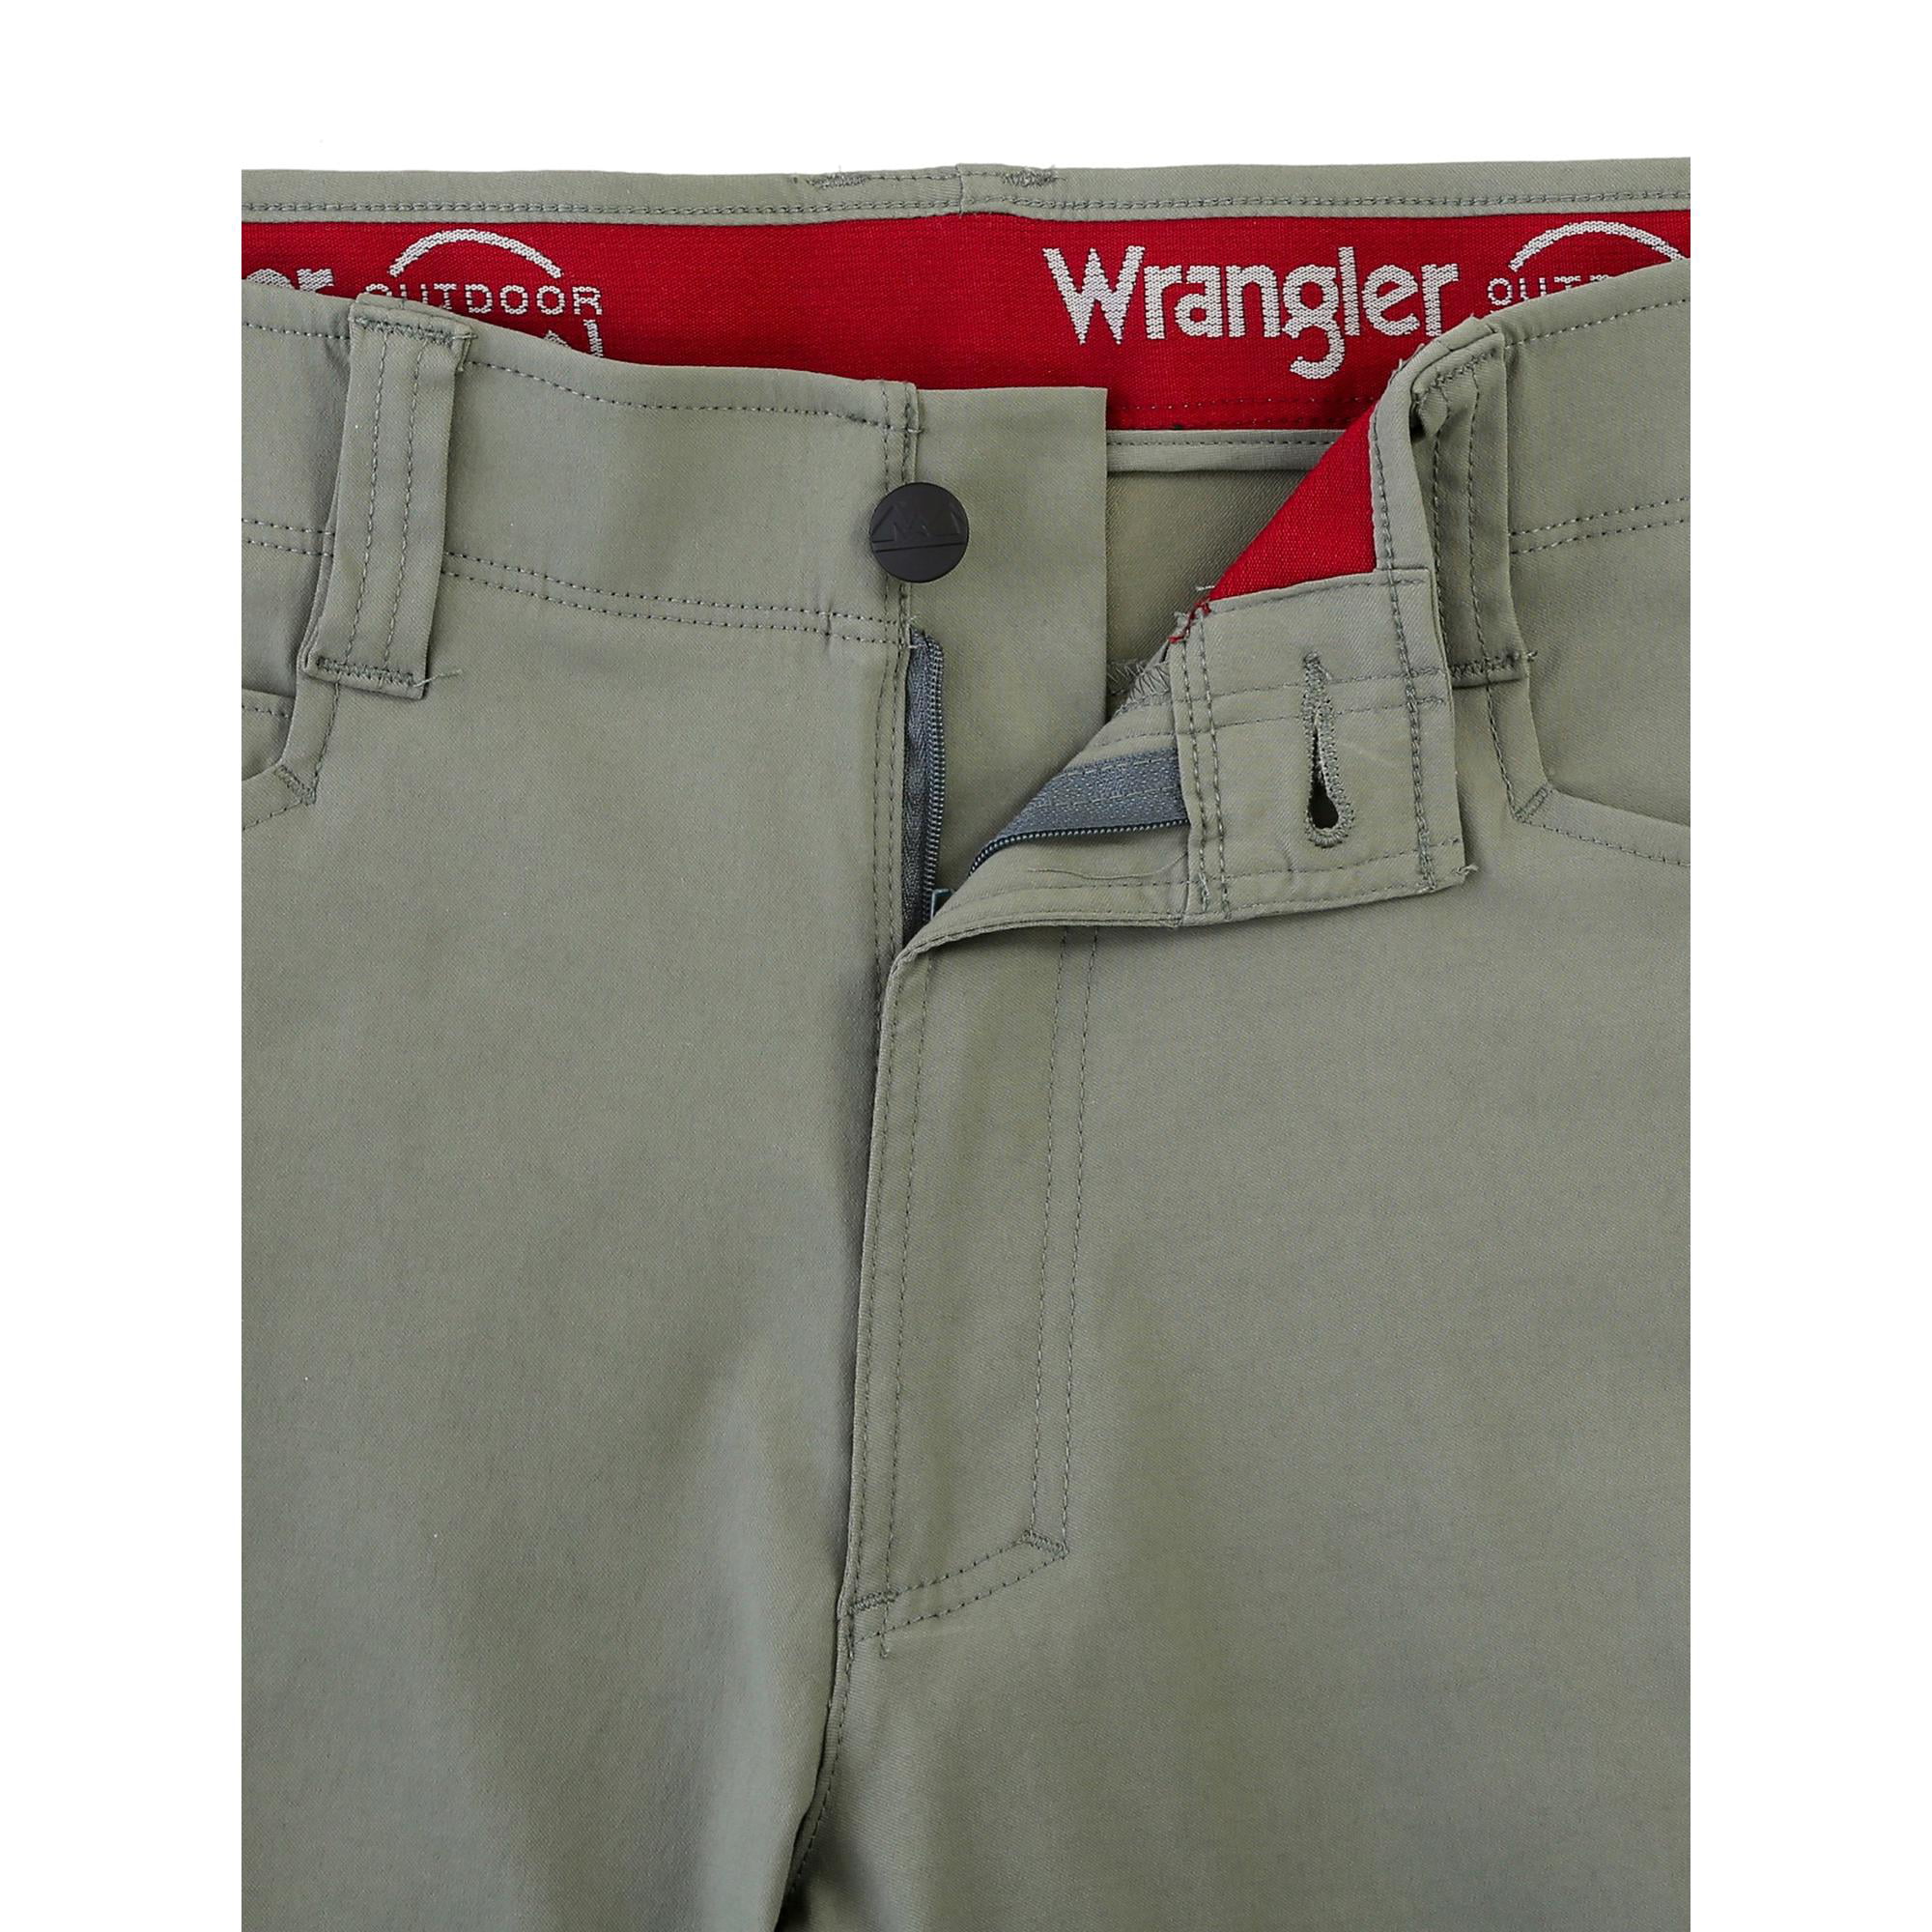 wrangler pants walmart